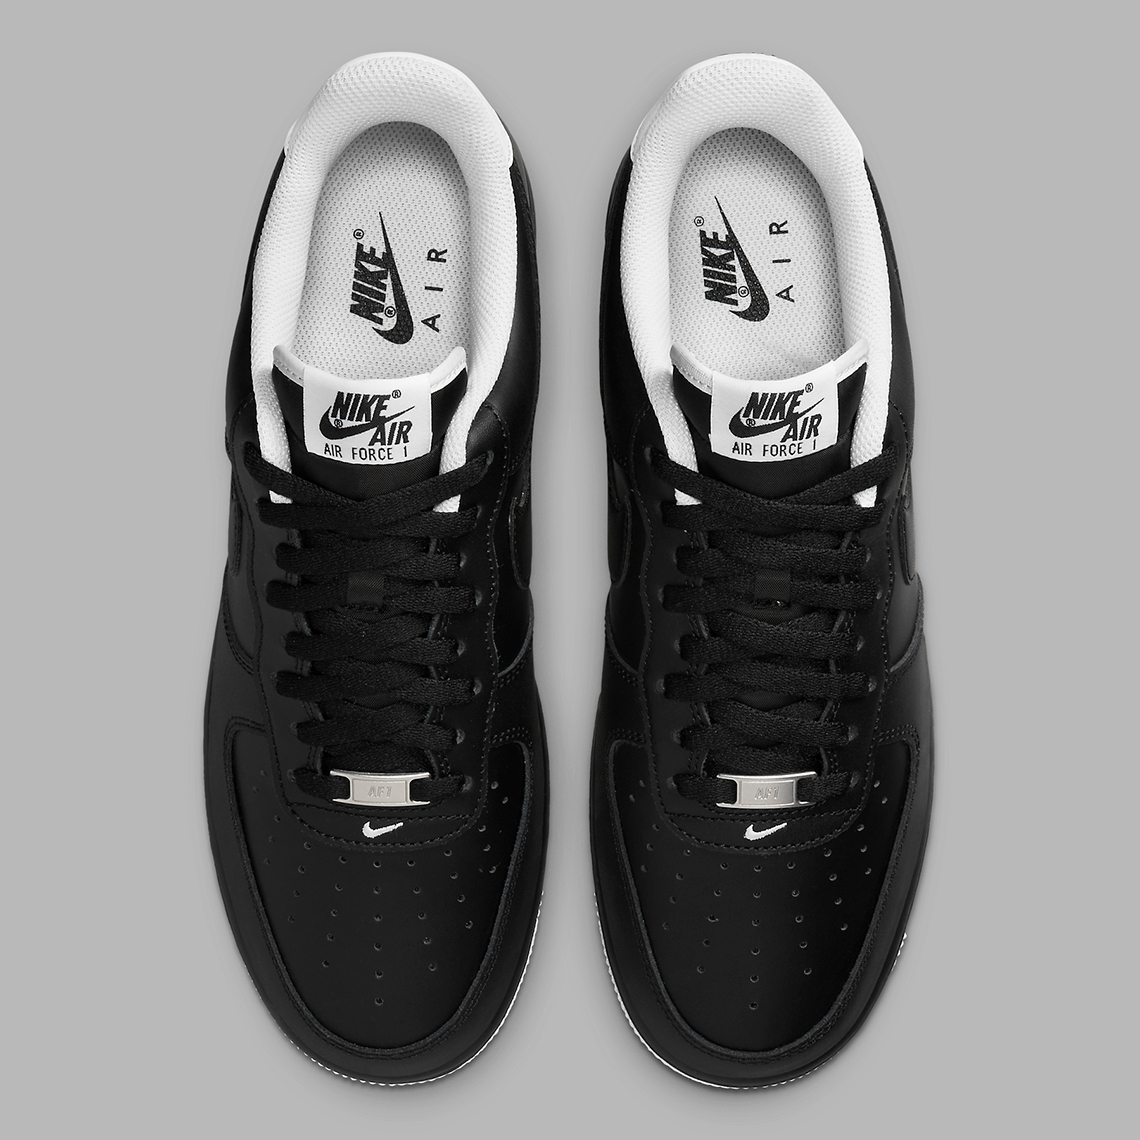 Nike Air Force 1, AF1 Trainers In Black, Healthdesign?